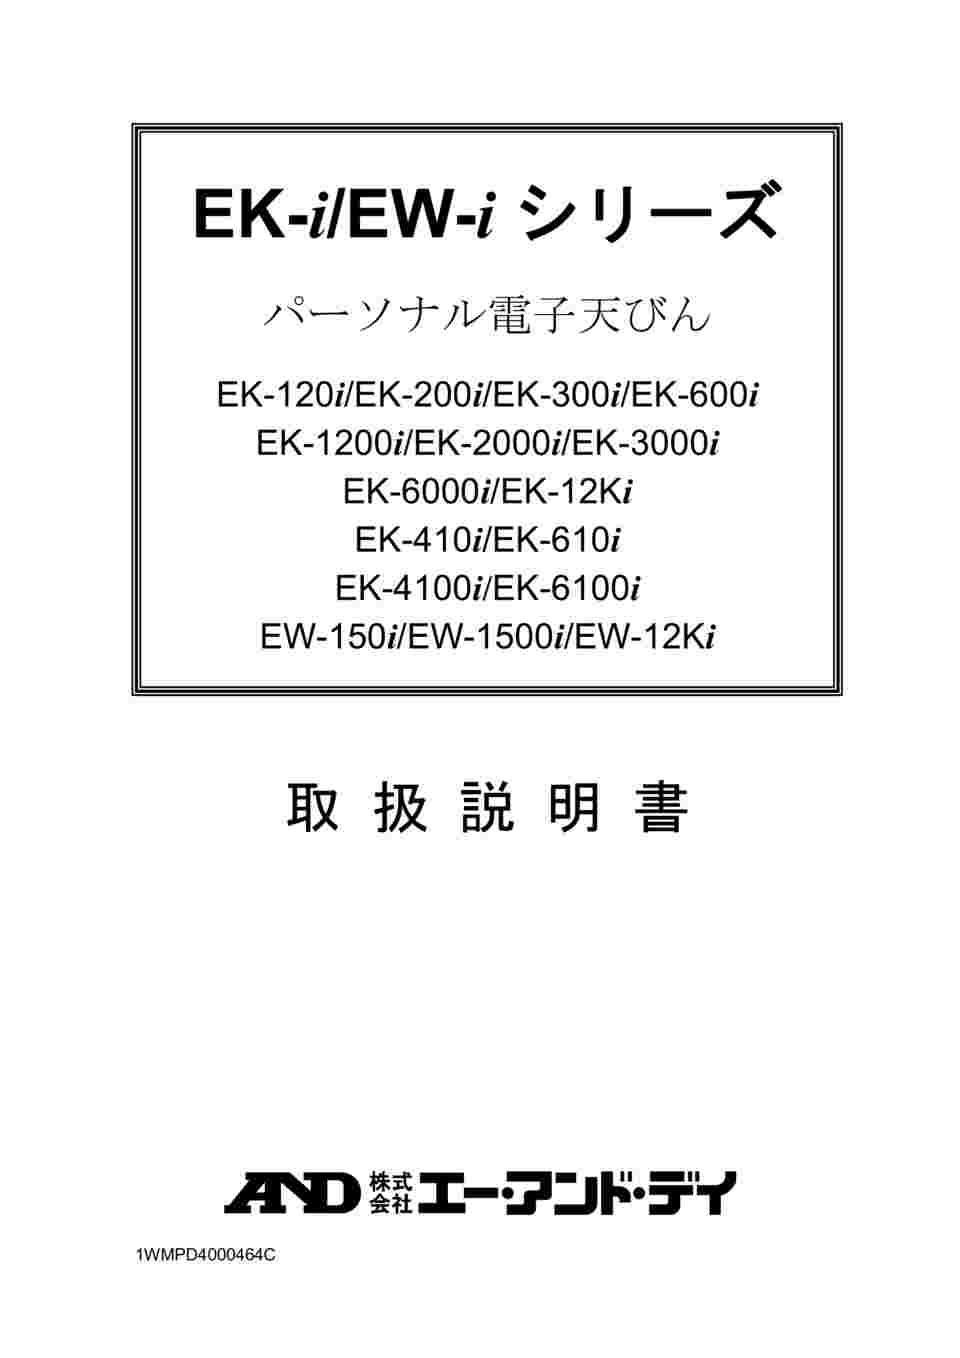 1-6842-02 コンパクト電子天びん トリプルレンジ EW-iシリーズ ひょう